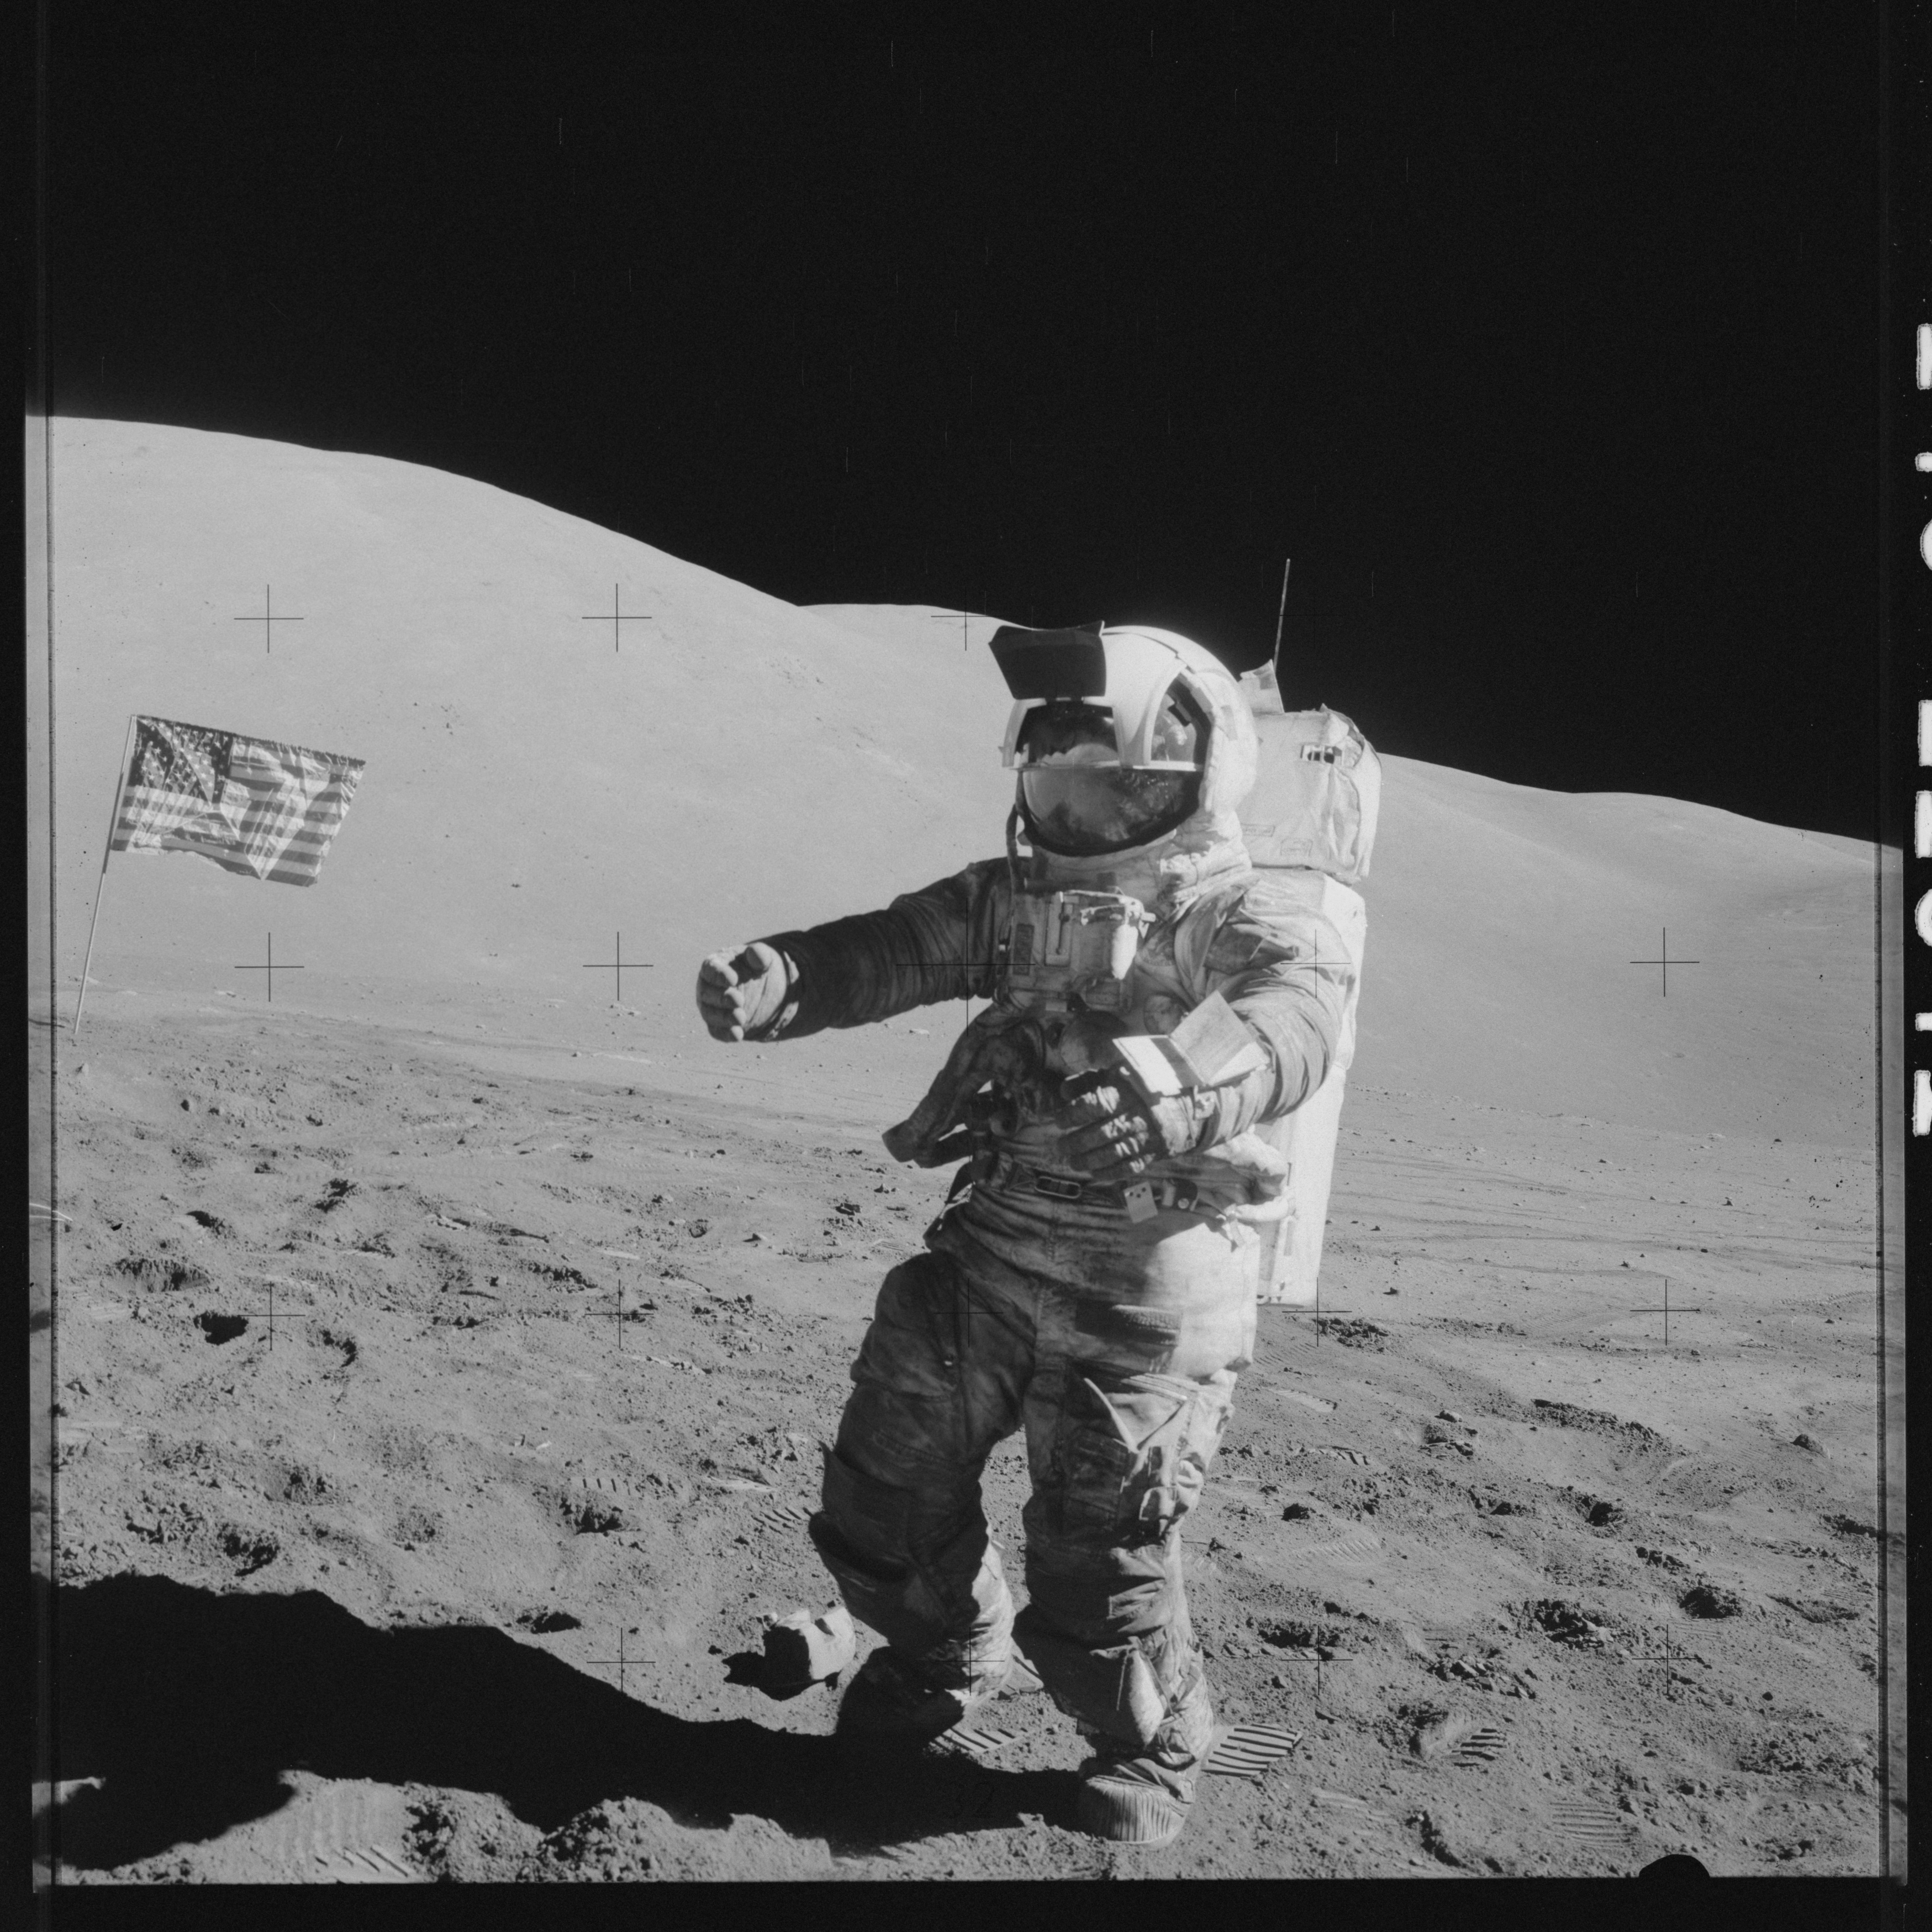 Первый русский на луне. Аполлон 17. Шмитт астронавт фото НАСА Аполлон 17. Аполлон 17 на Луне. 1969 Первый человек на Луне.